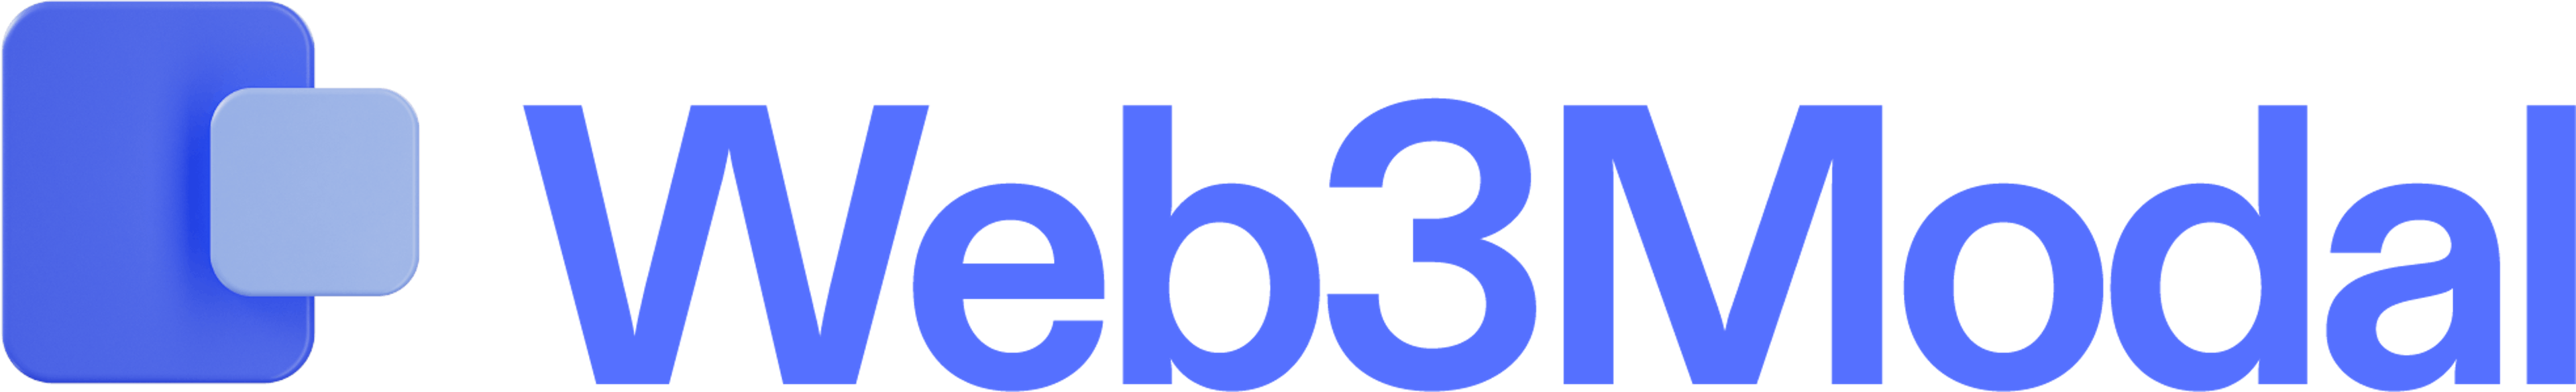 The Web3Modal logo